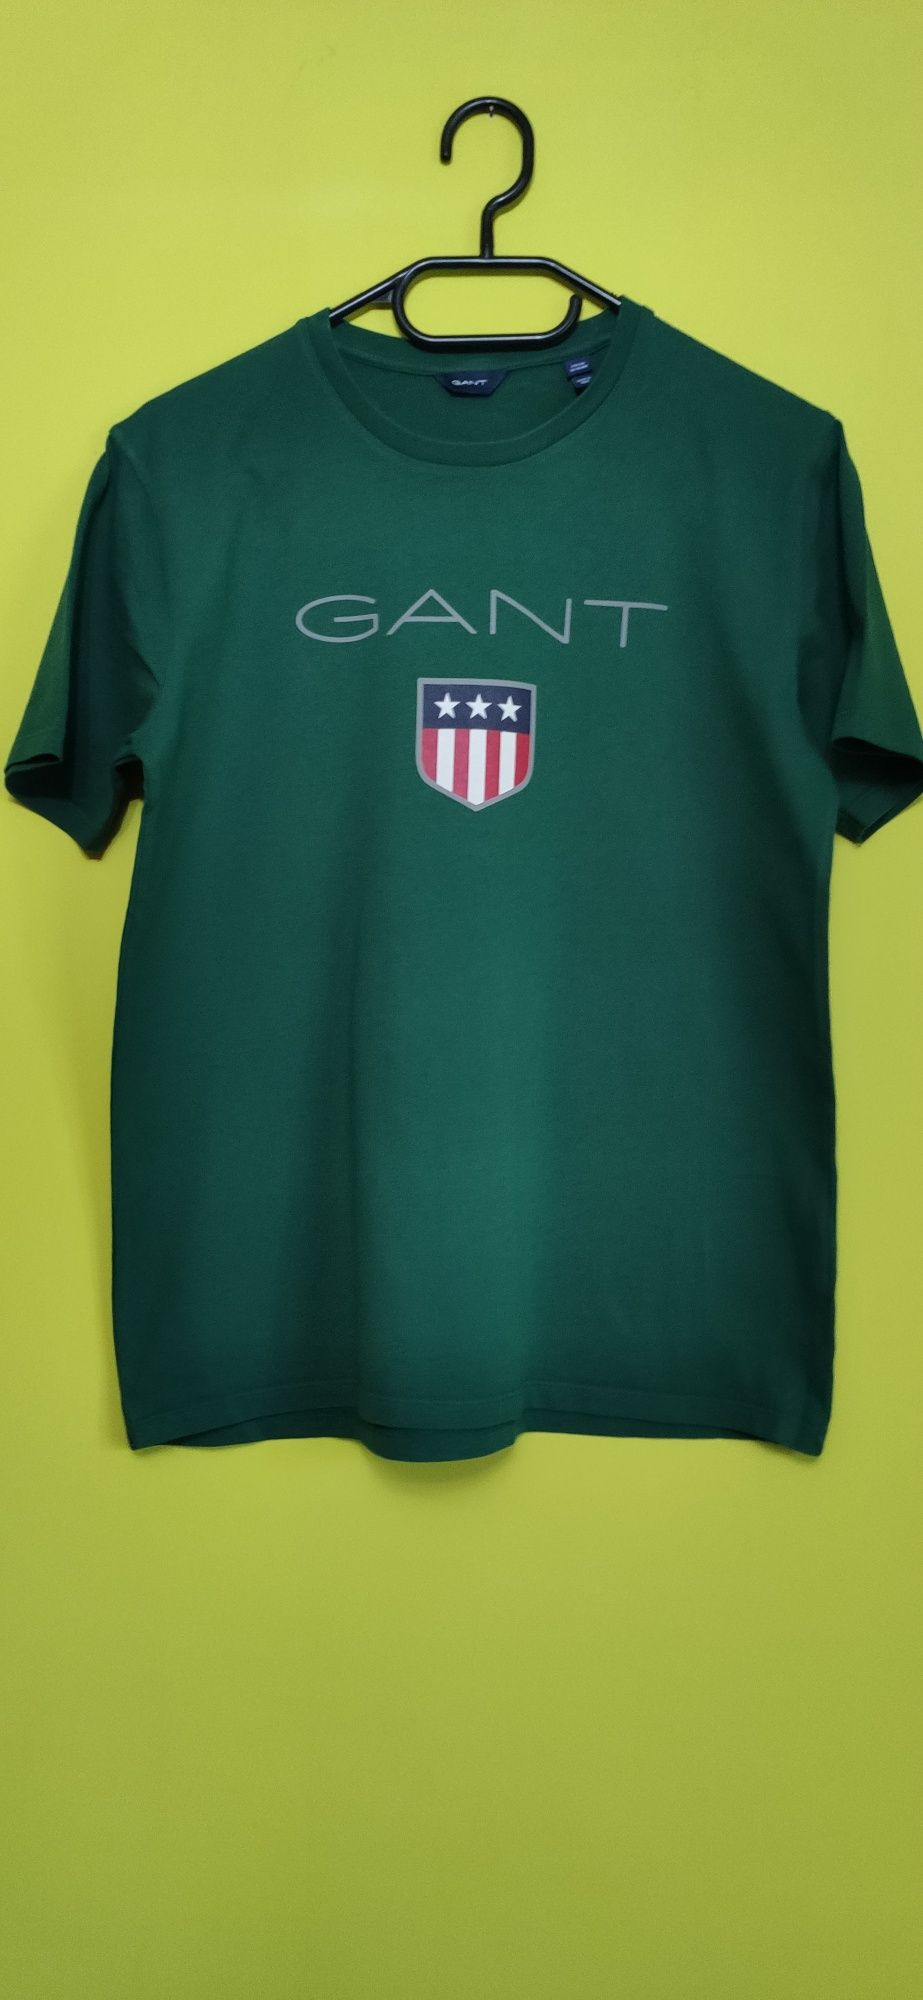 Koszulka t-shirt męski firmy Giant kolor zielony